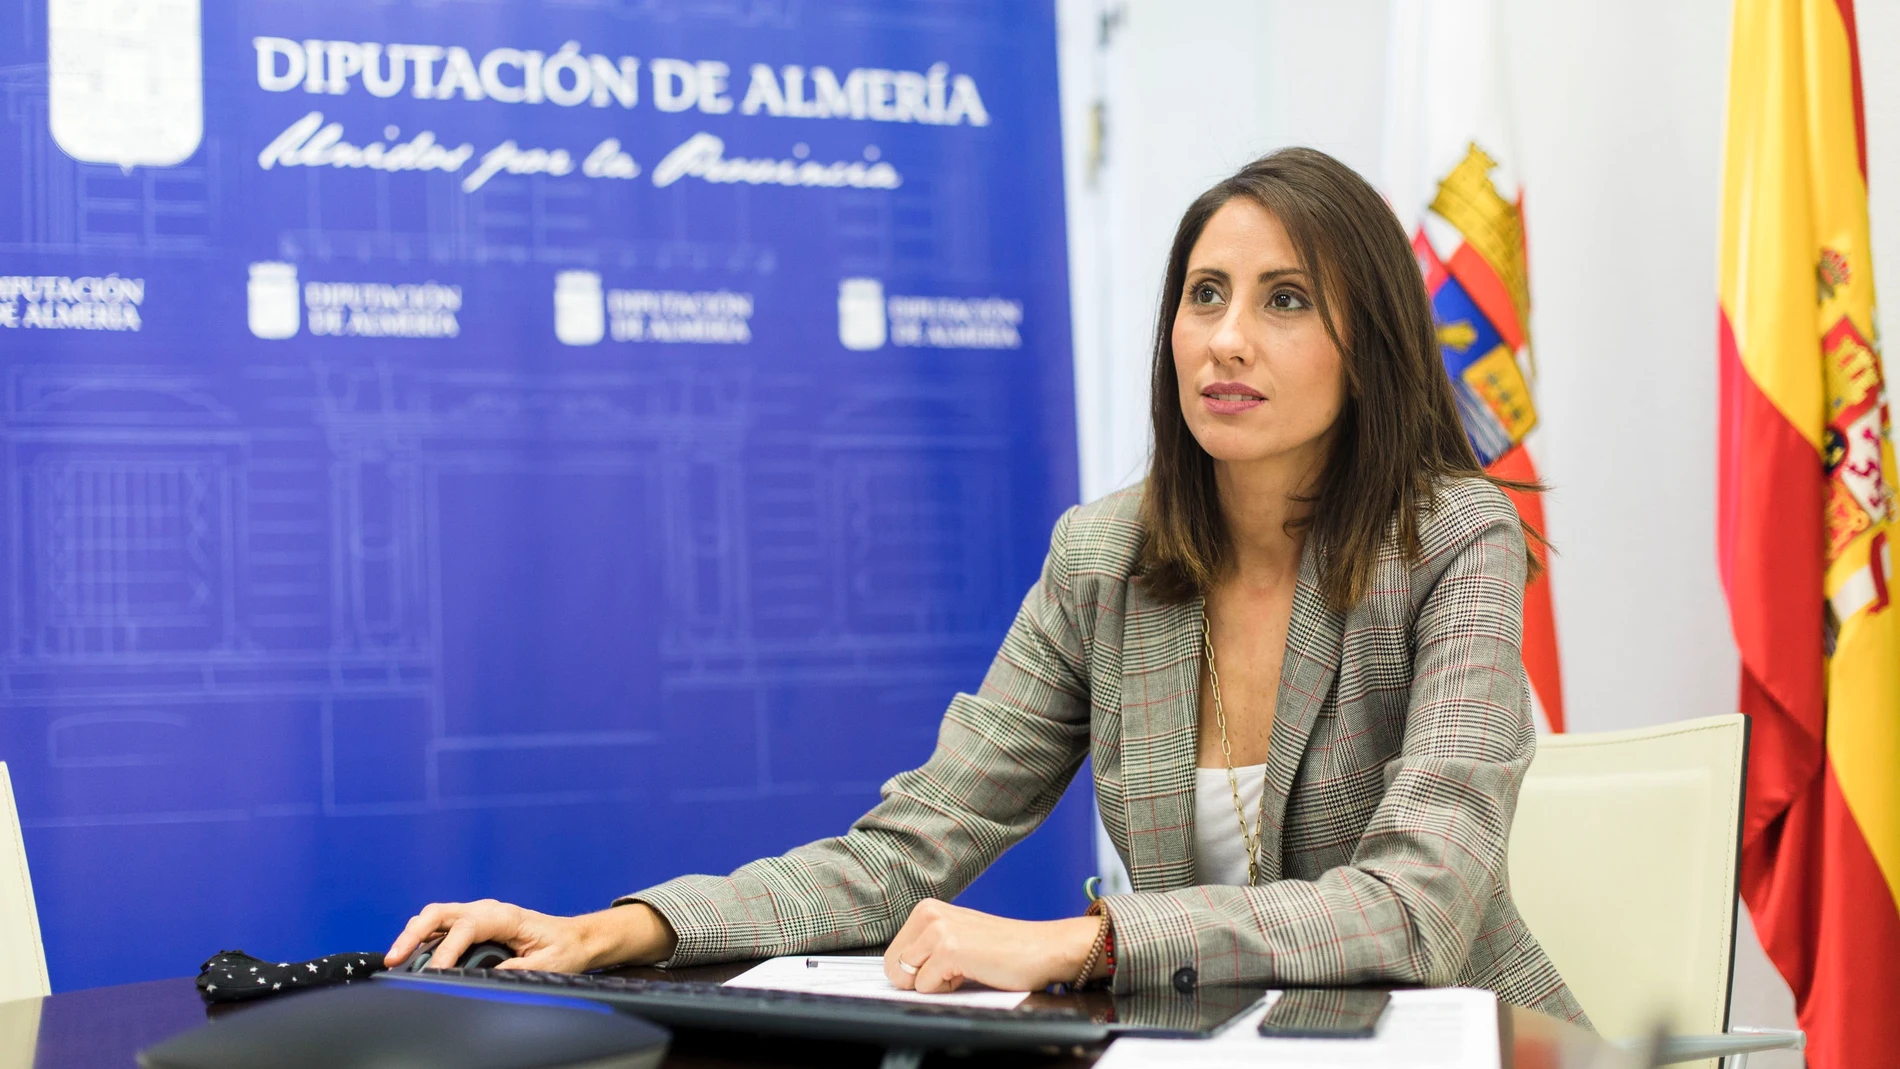 La diputada provincial de Almería Carmen Belén López